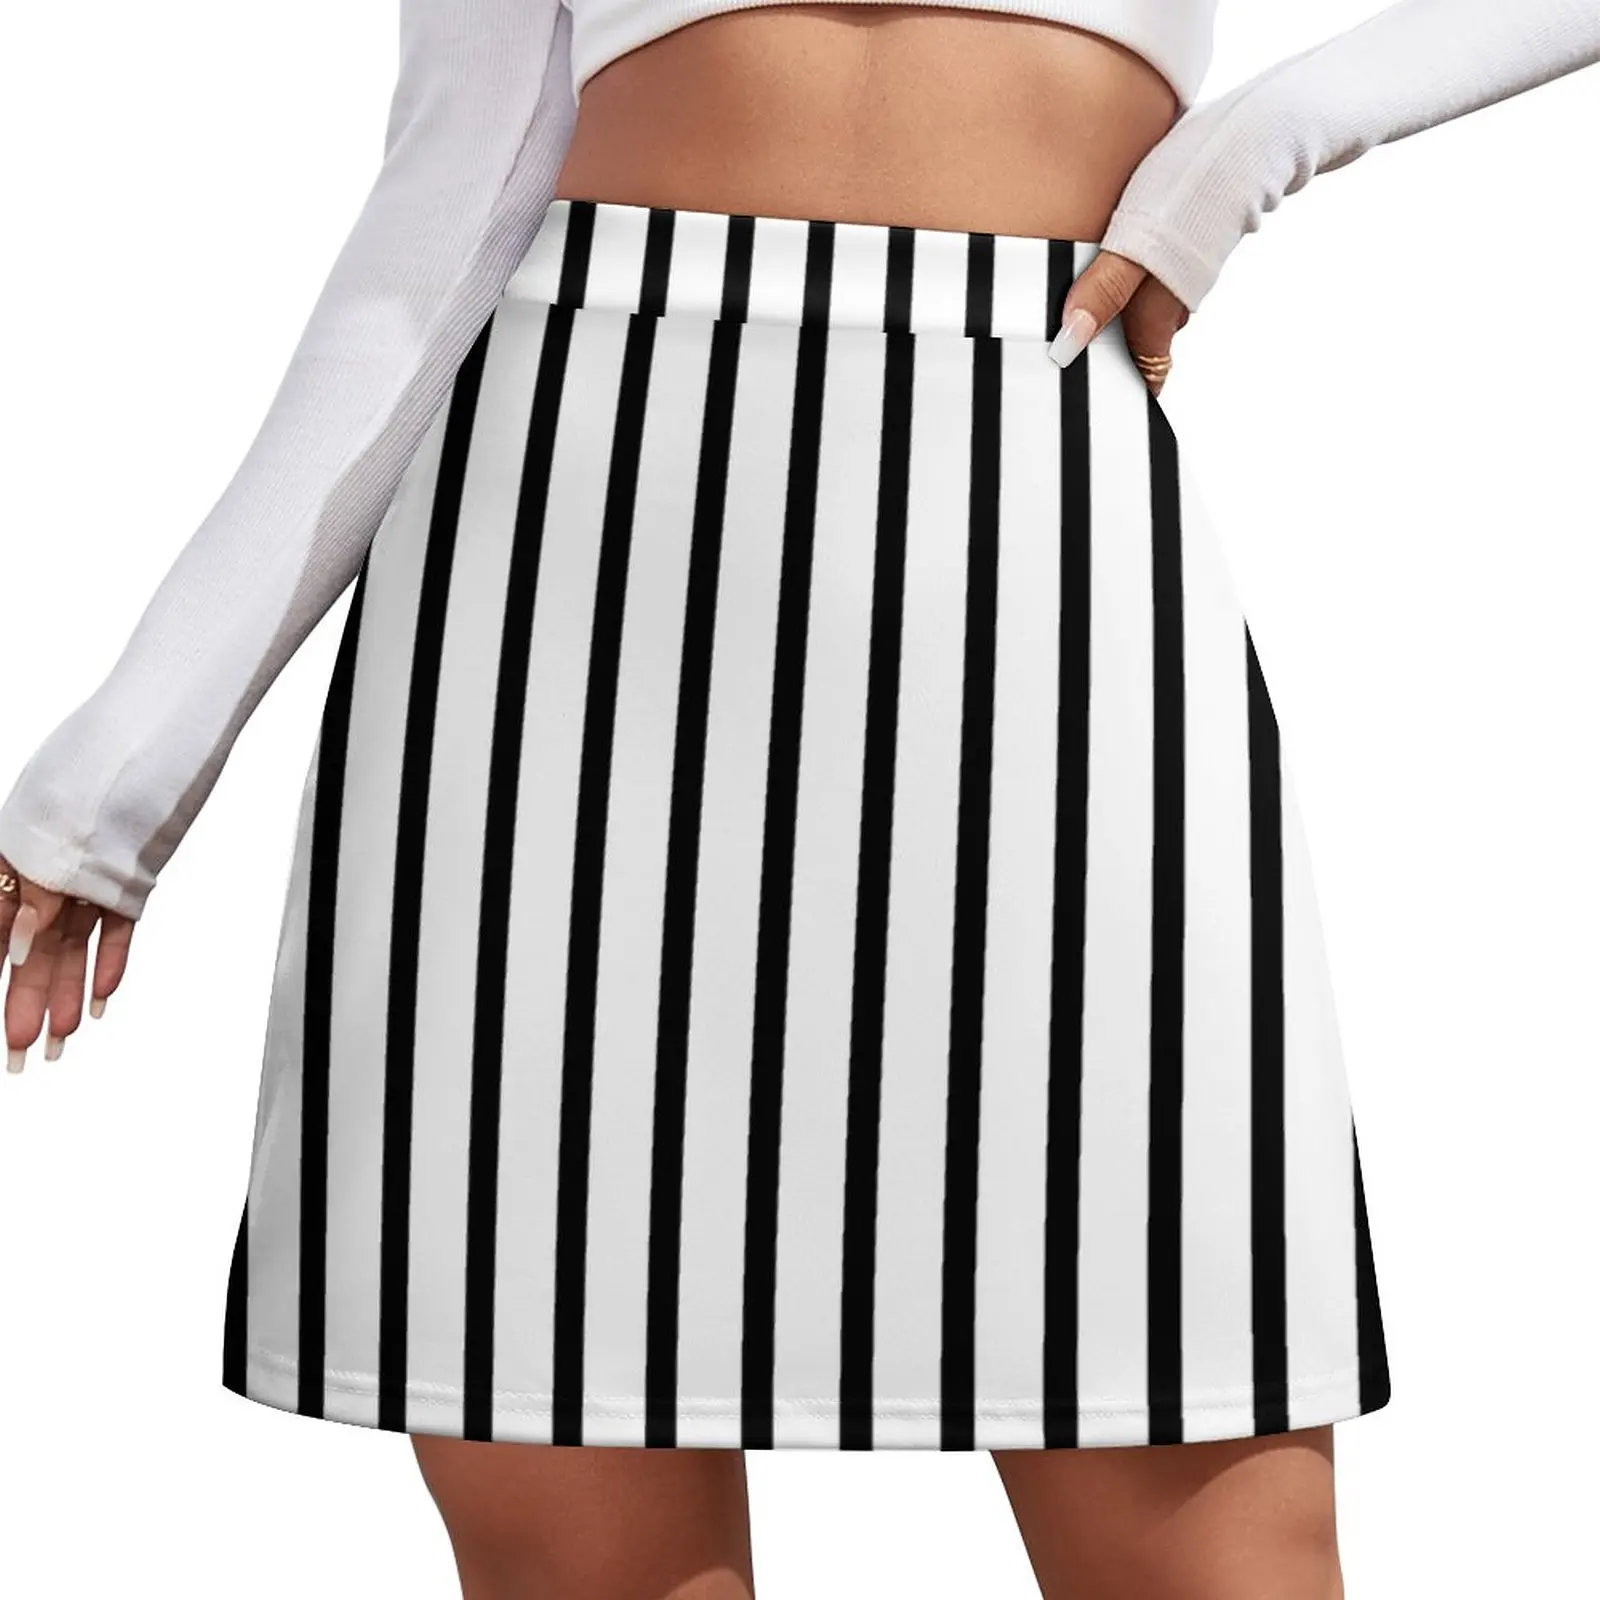 

Thin Black White Stripes Miniskirt Mini Skirt extreme mini dress korean fashion skirts